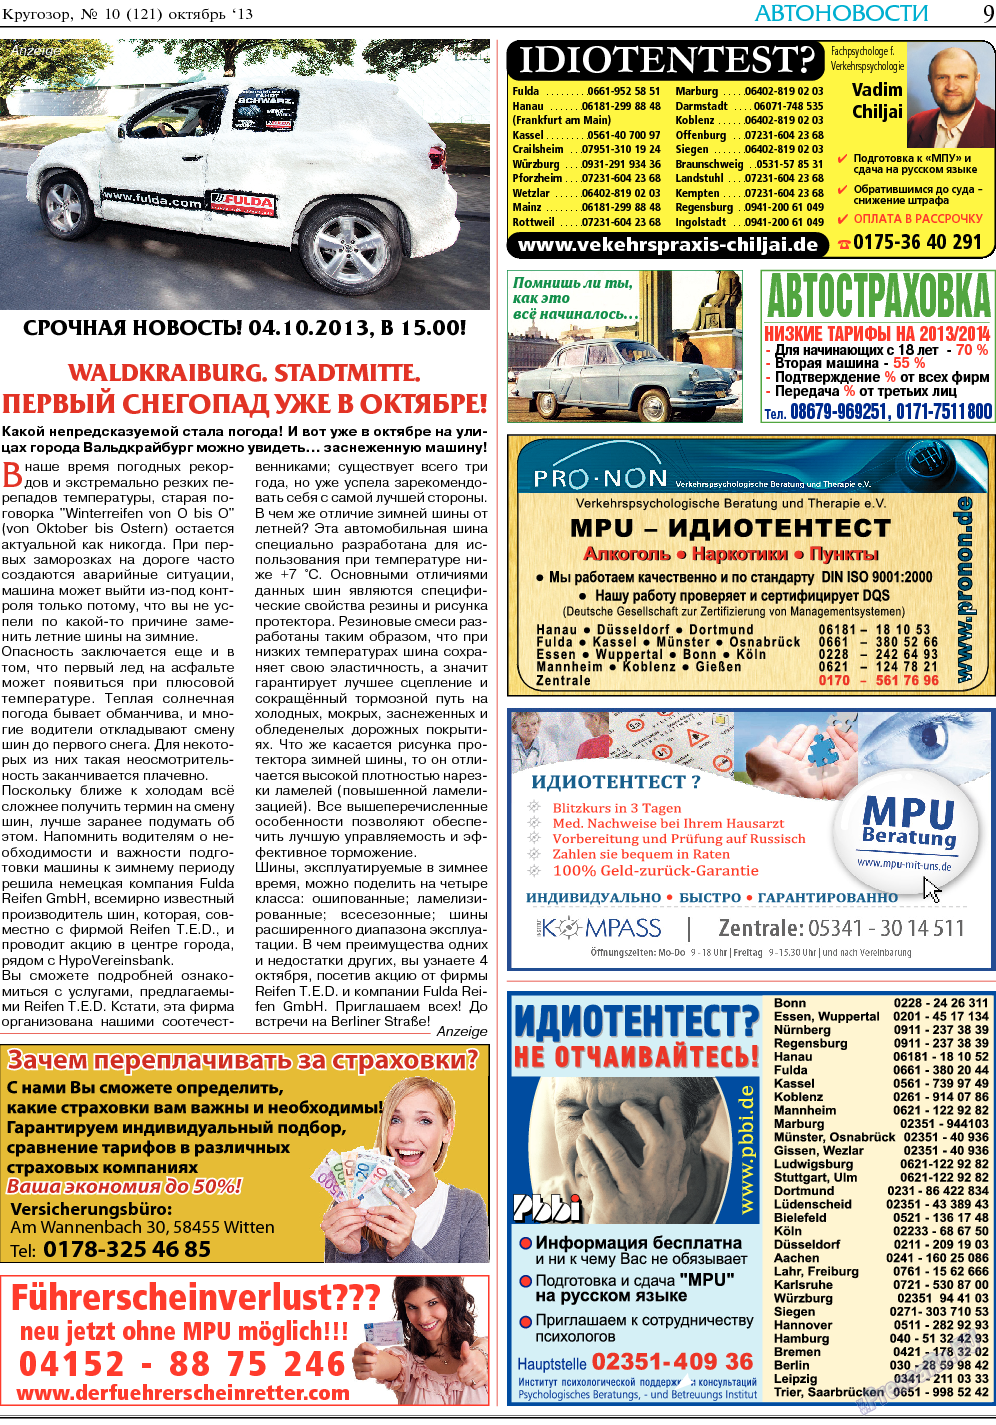 Кругозор, газета. 2013 №10 стр.9